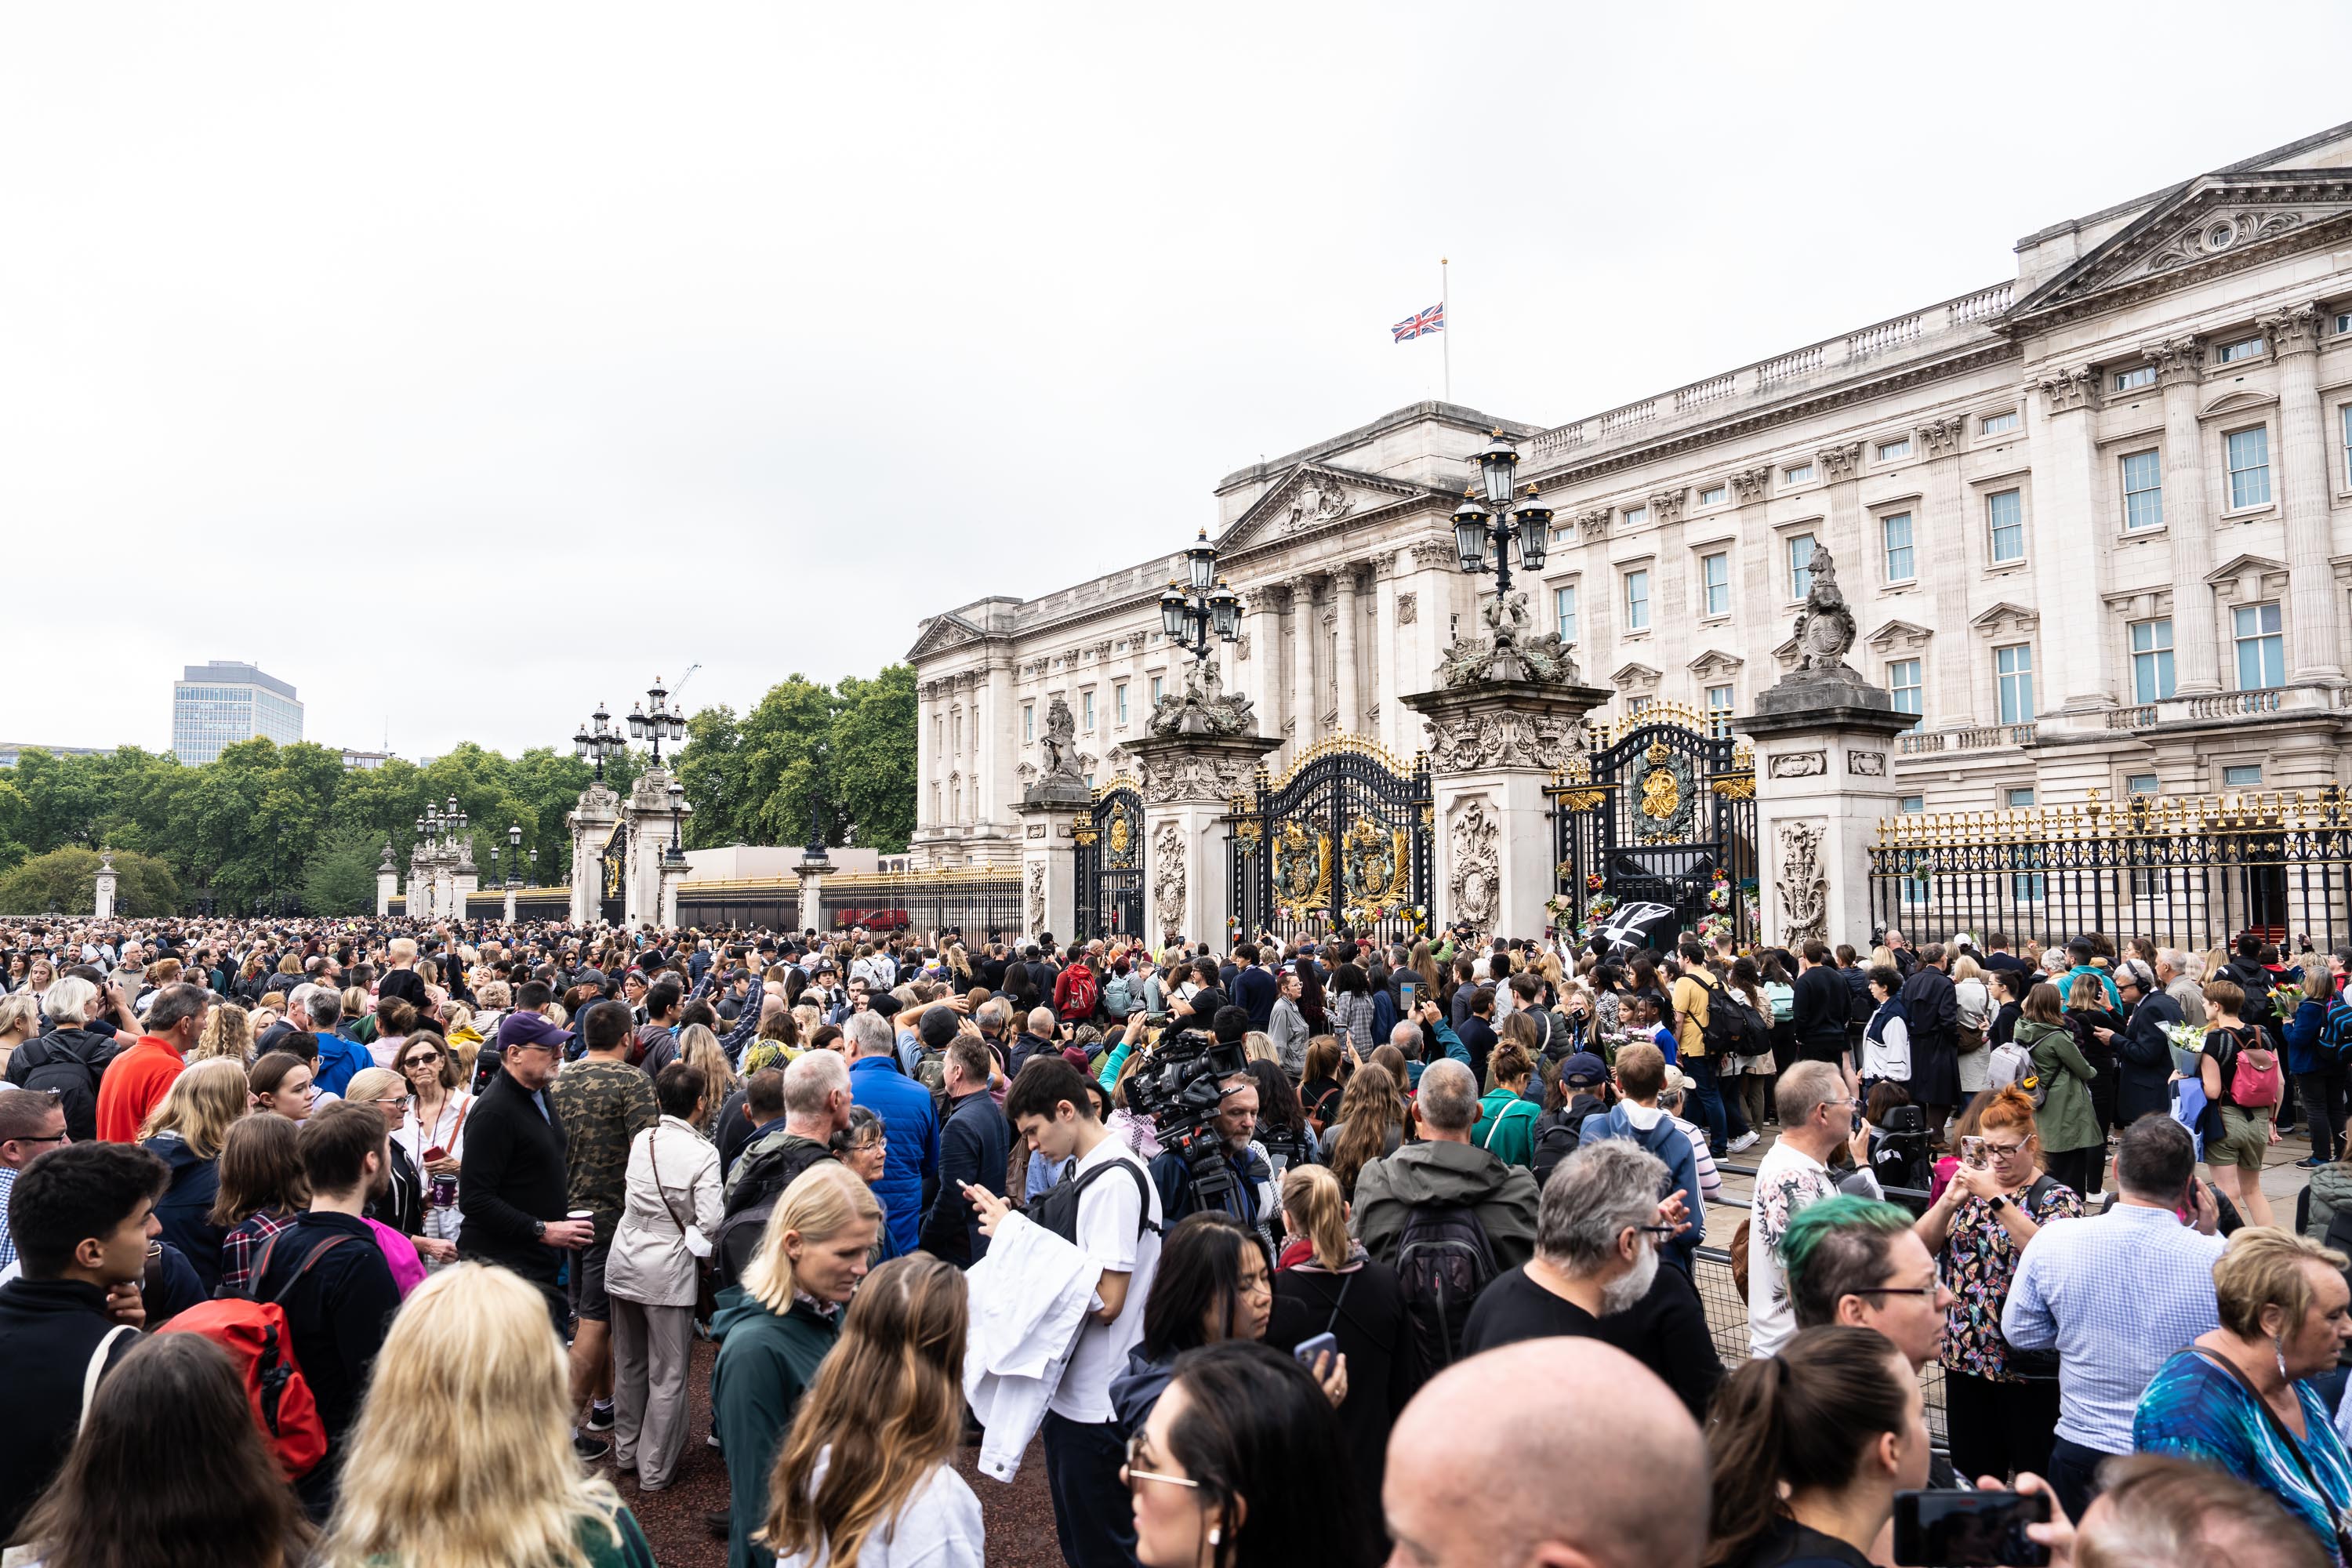 The scene outside Buckingham Palace